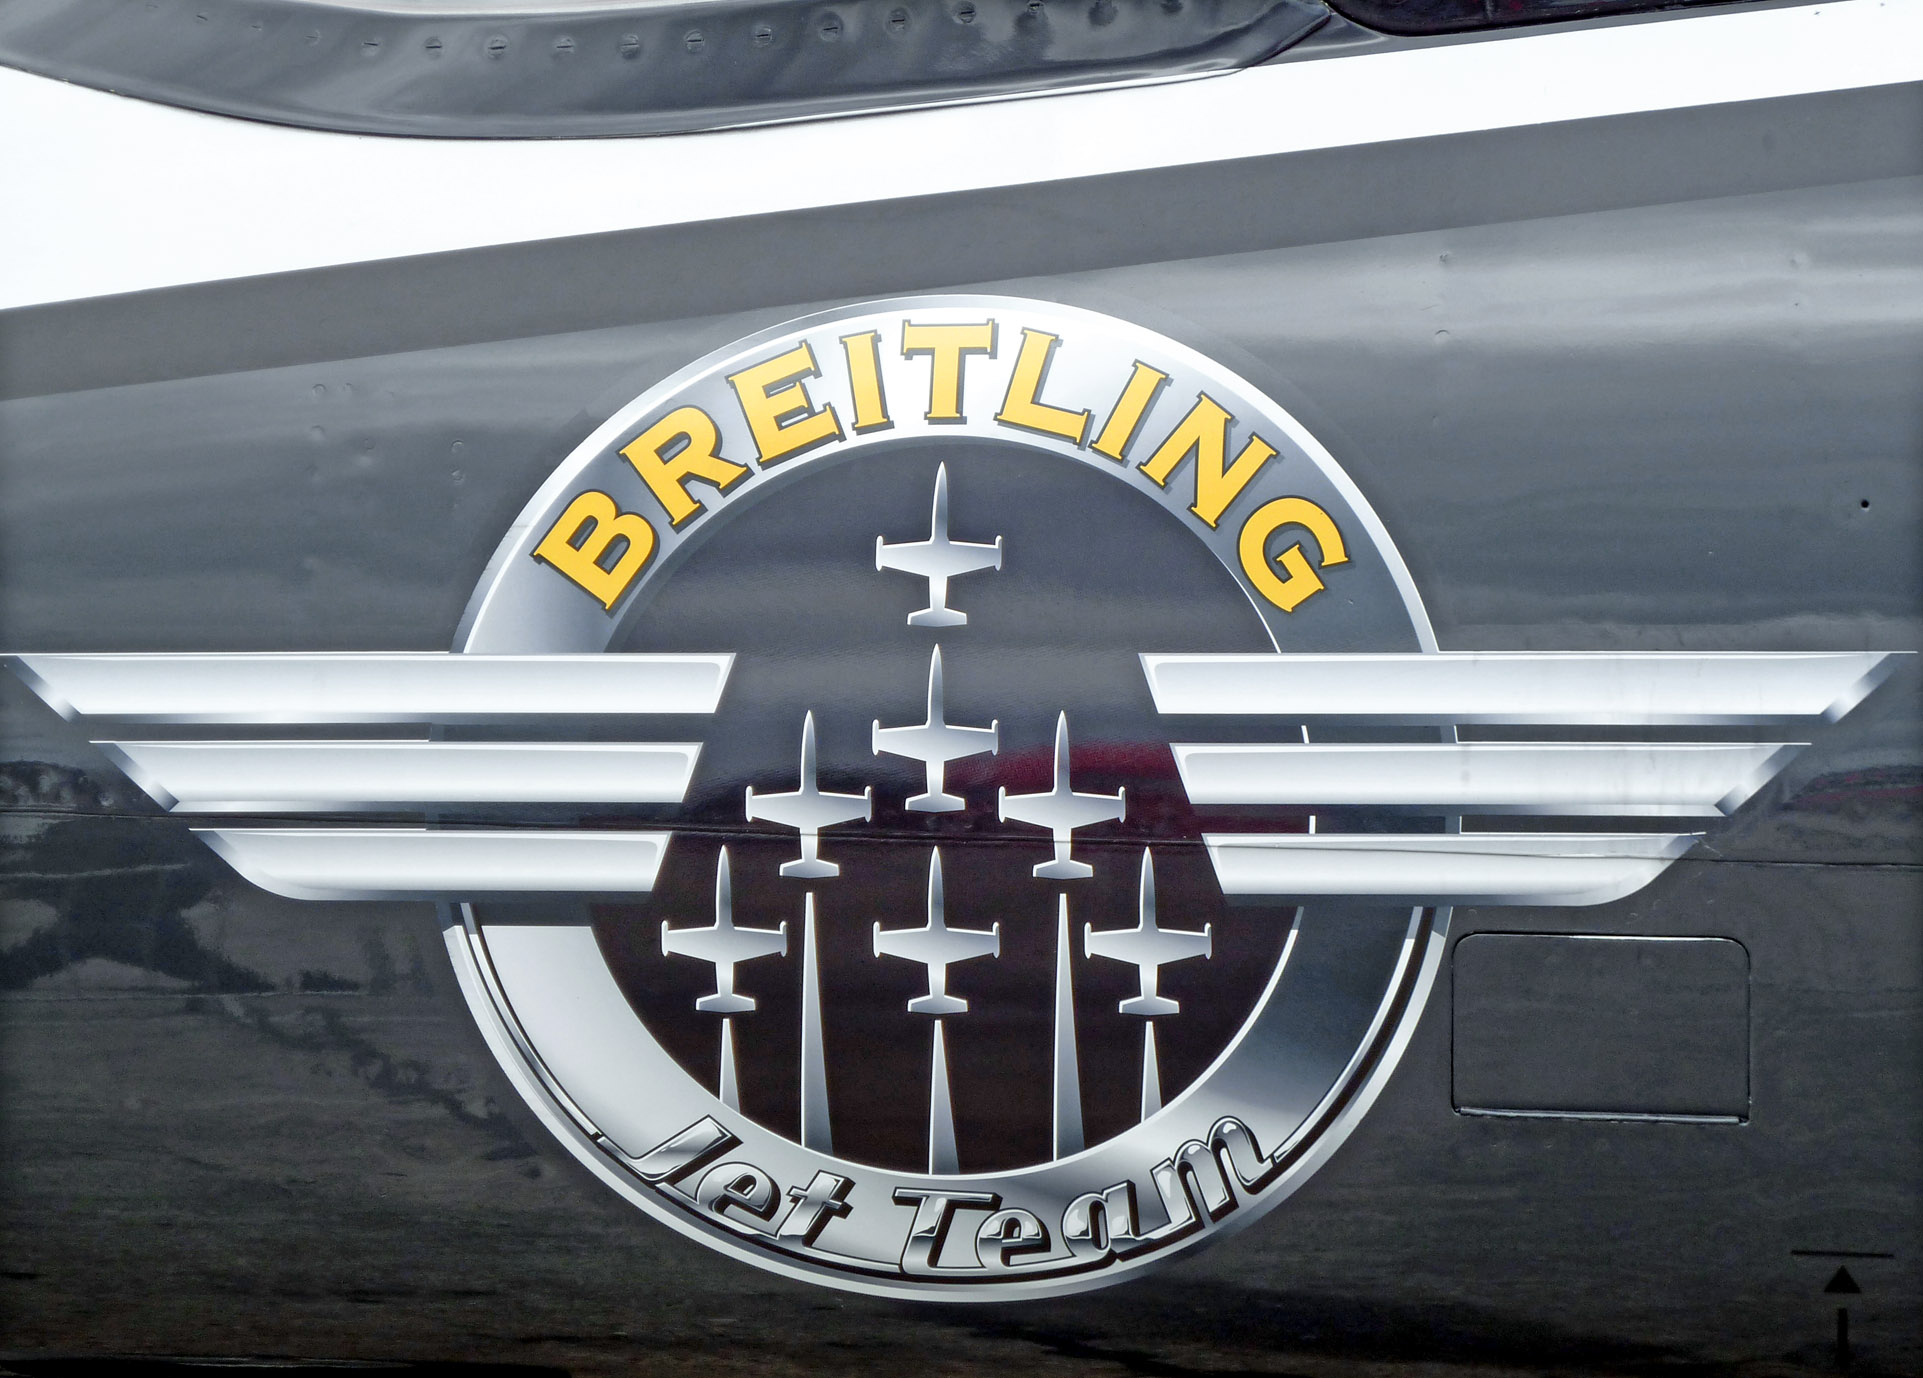 Breitling Jet Team logo using Kelvinized